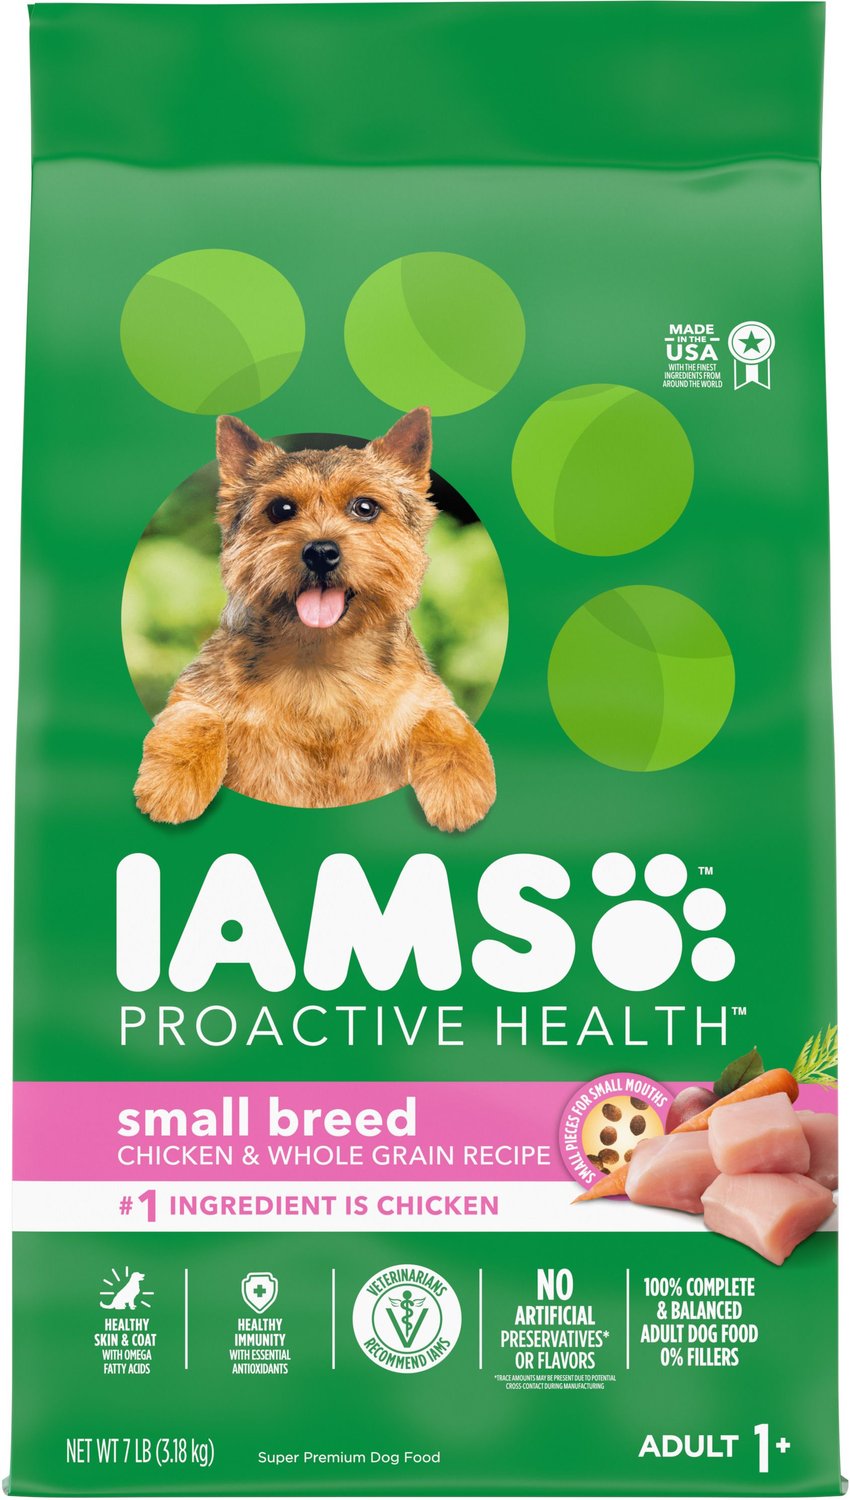 iams small dog food